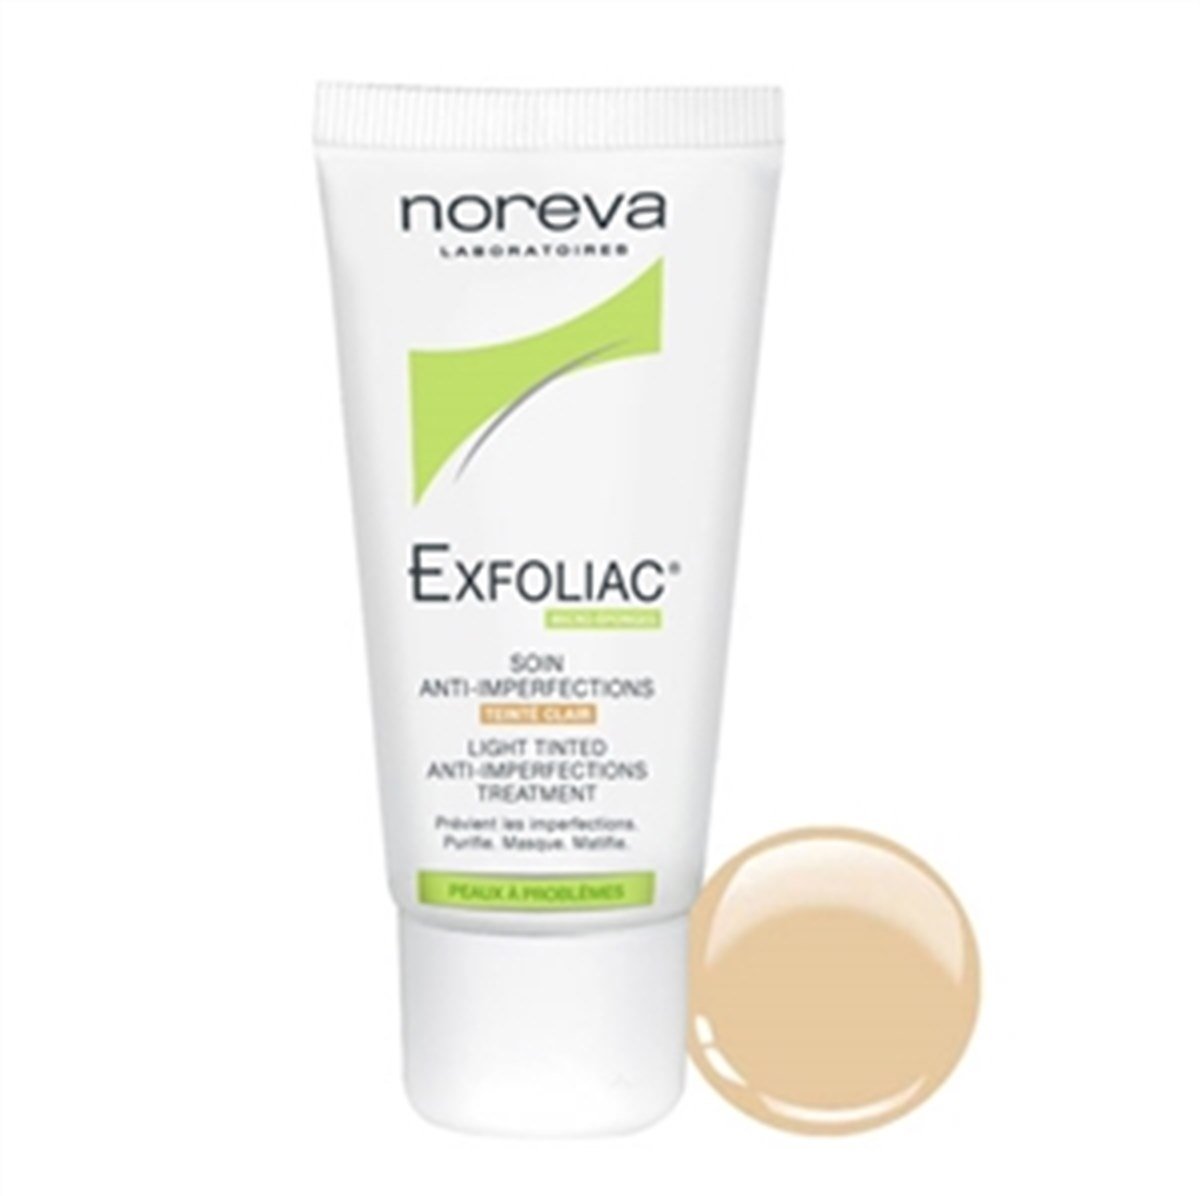 Noreva Exfoliac Light Tinted Anti-İmperfection Treatment 30ml